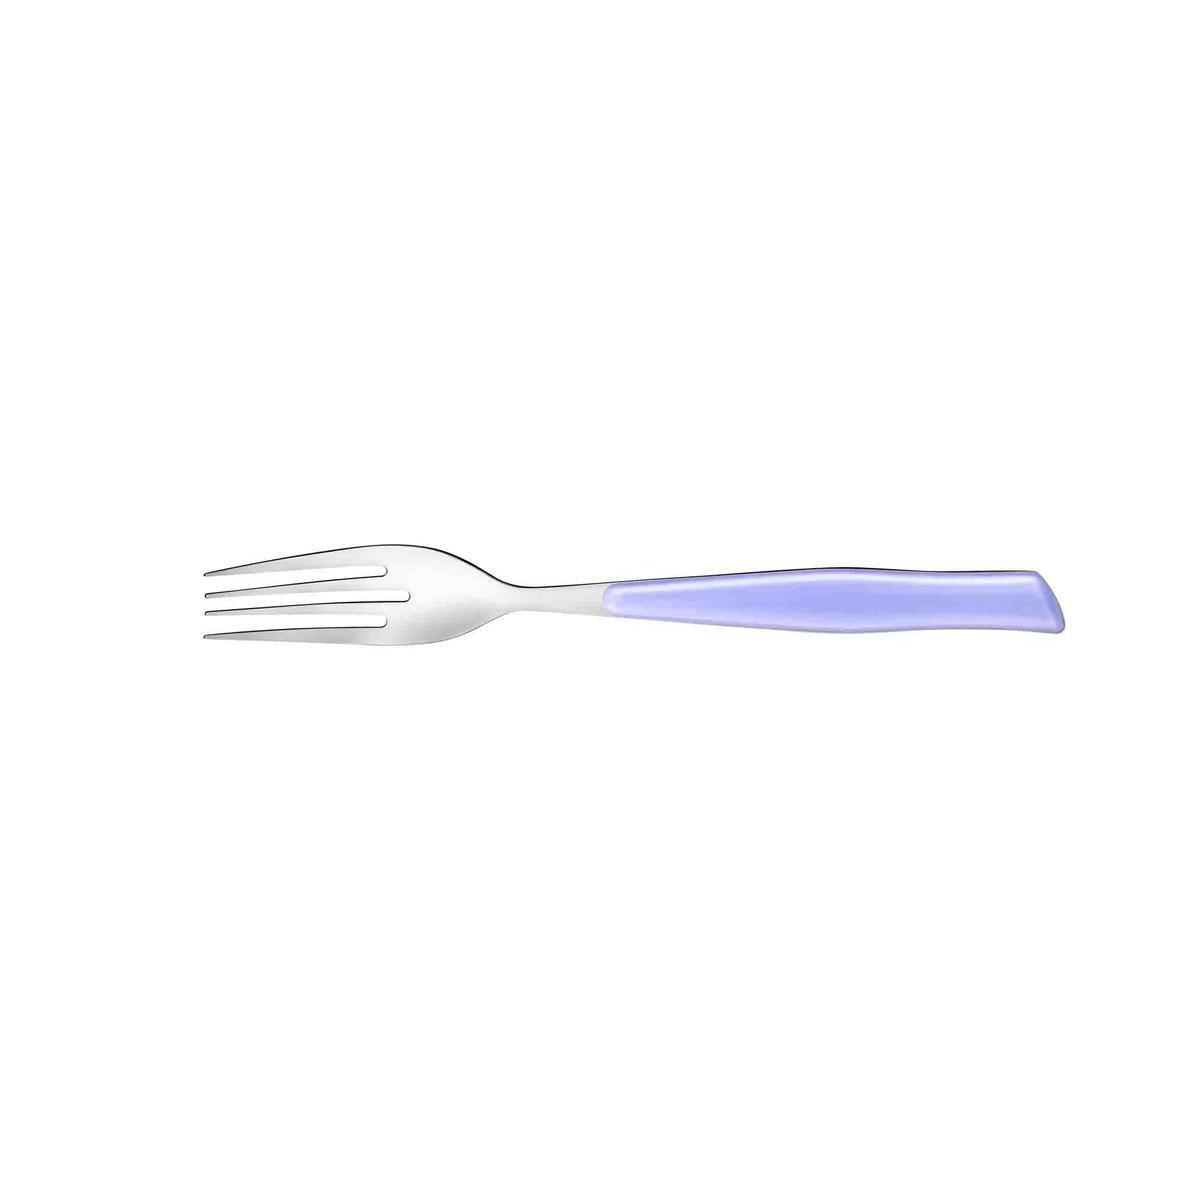 Fourchette élégance lilas - Acier inoxydable - 21,7 cm - Violet